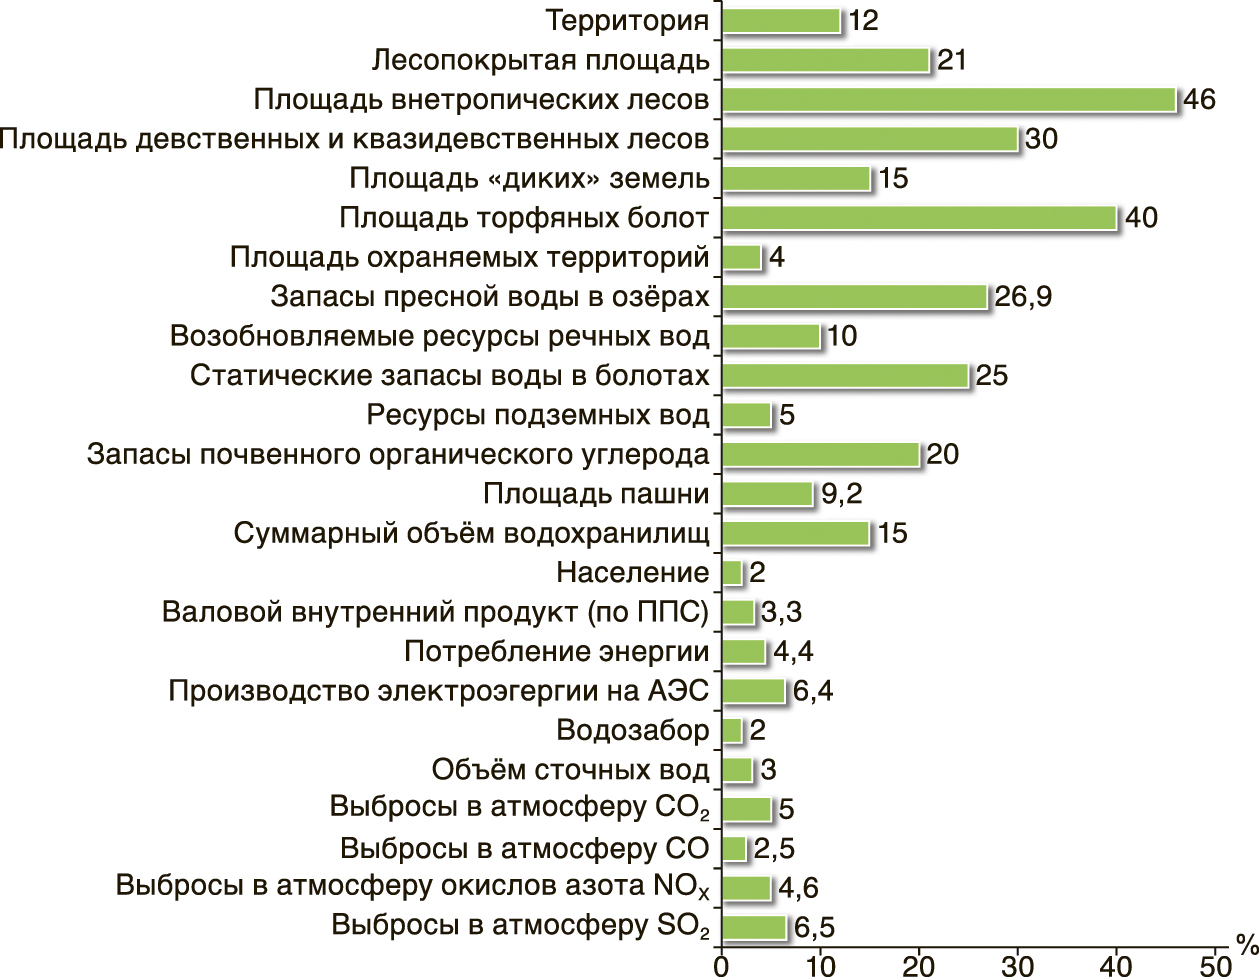  Экологически значимые характеристики России (% от мира, 2000-е гг.). 